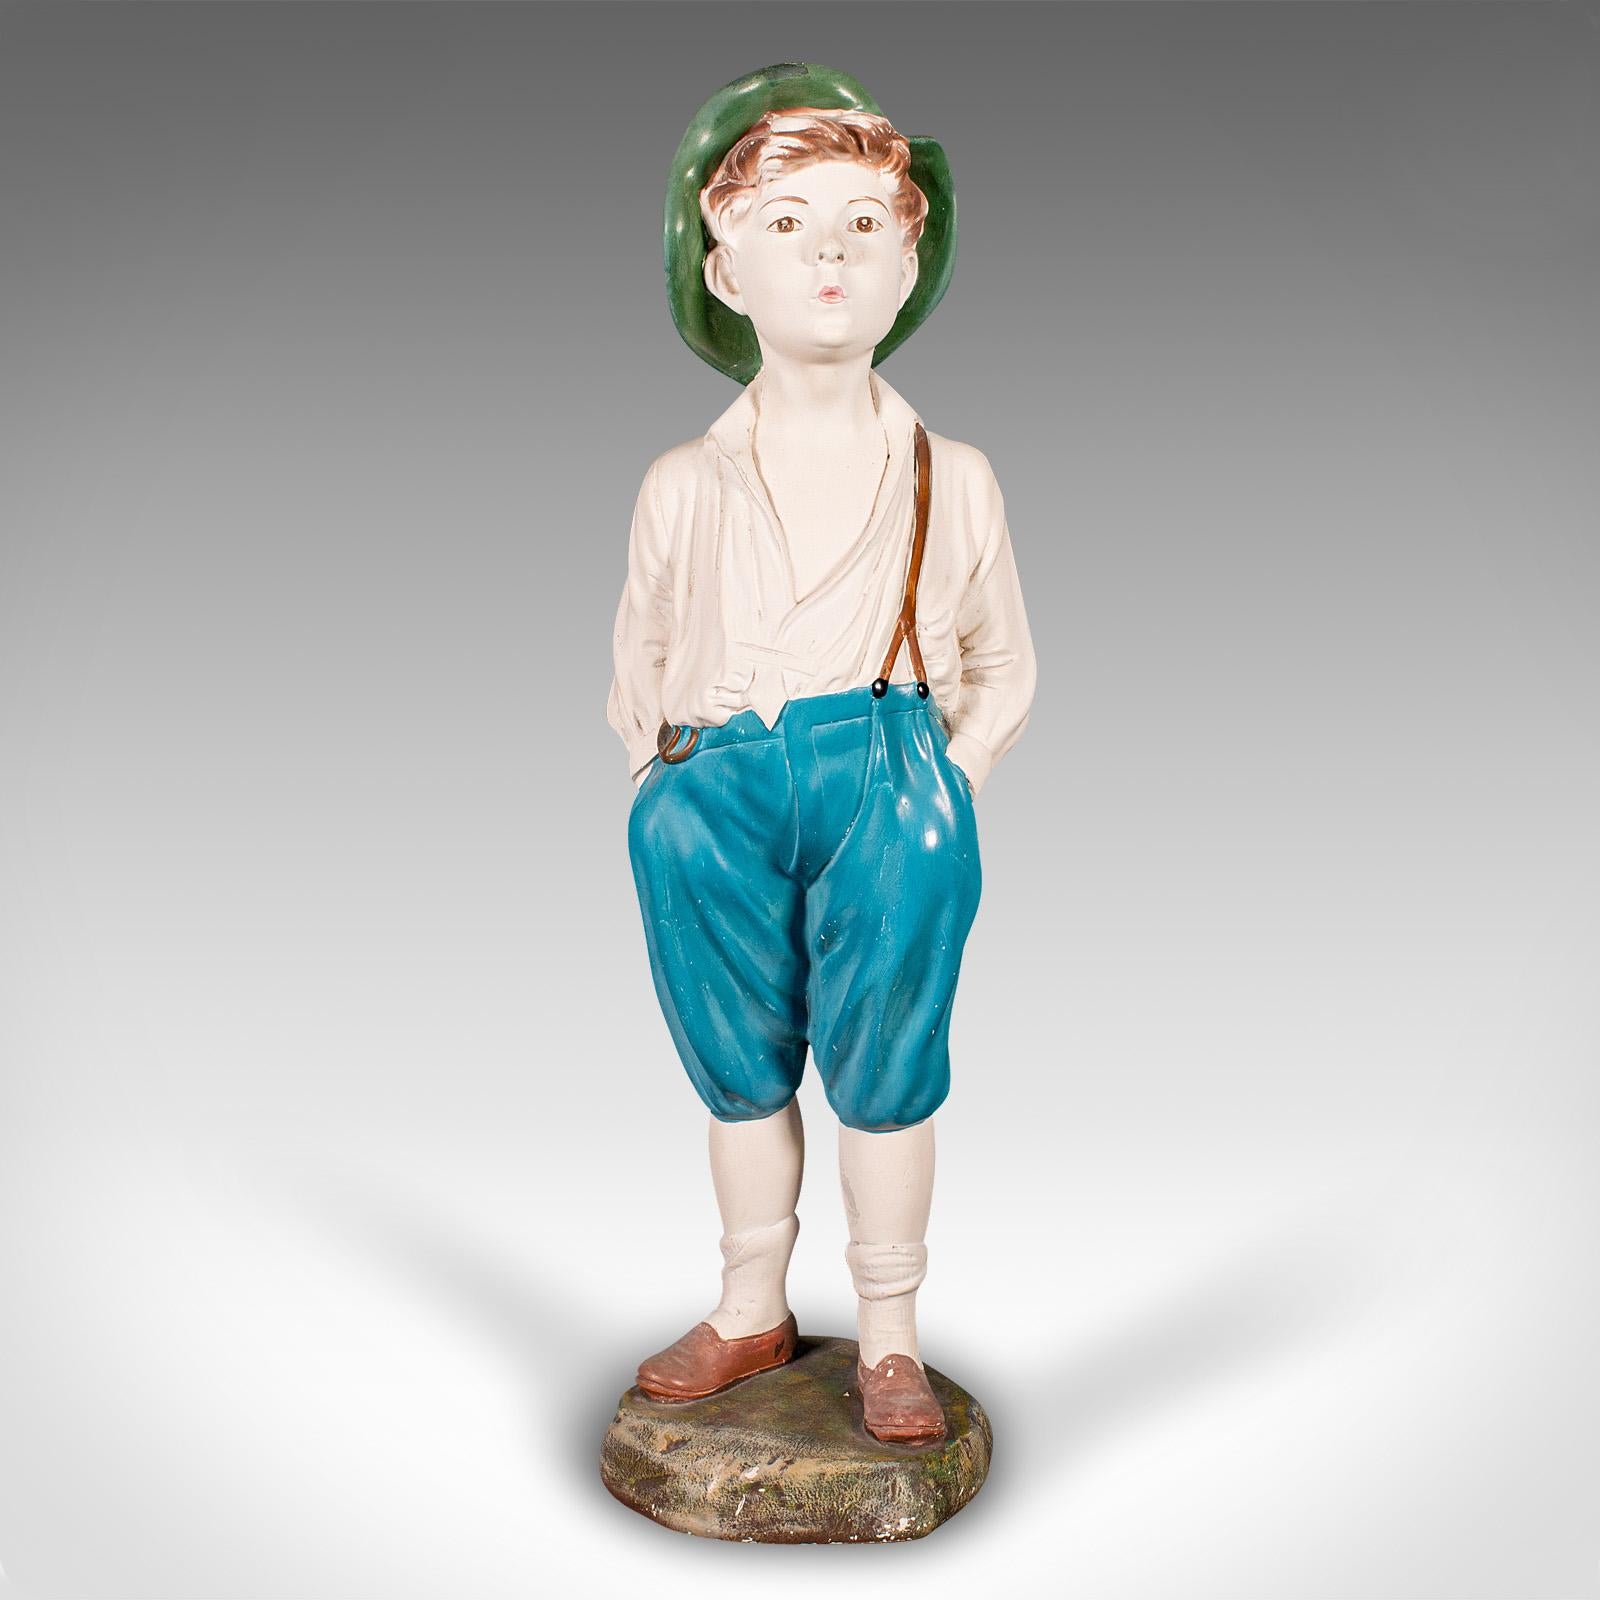 
Il s'agit d'une grande figurine vintage de garçon siffleur. Statue décorative anglaise en plâtre, datant de la période Art déco, vers 1930.

Un garçon espiègle et attachant, avec un grand attrait pour l'exposition
Présentant une patine d'usage